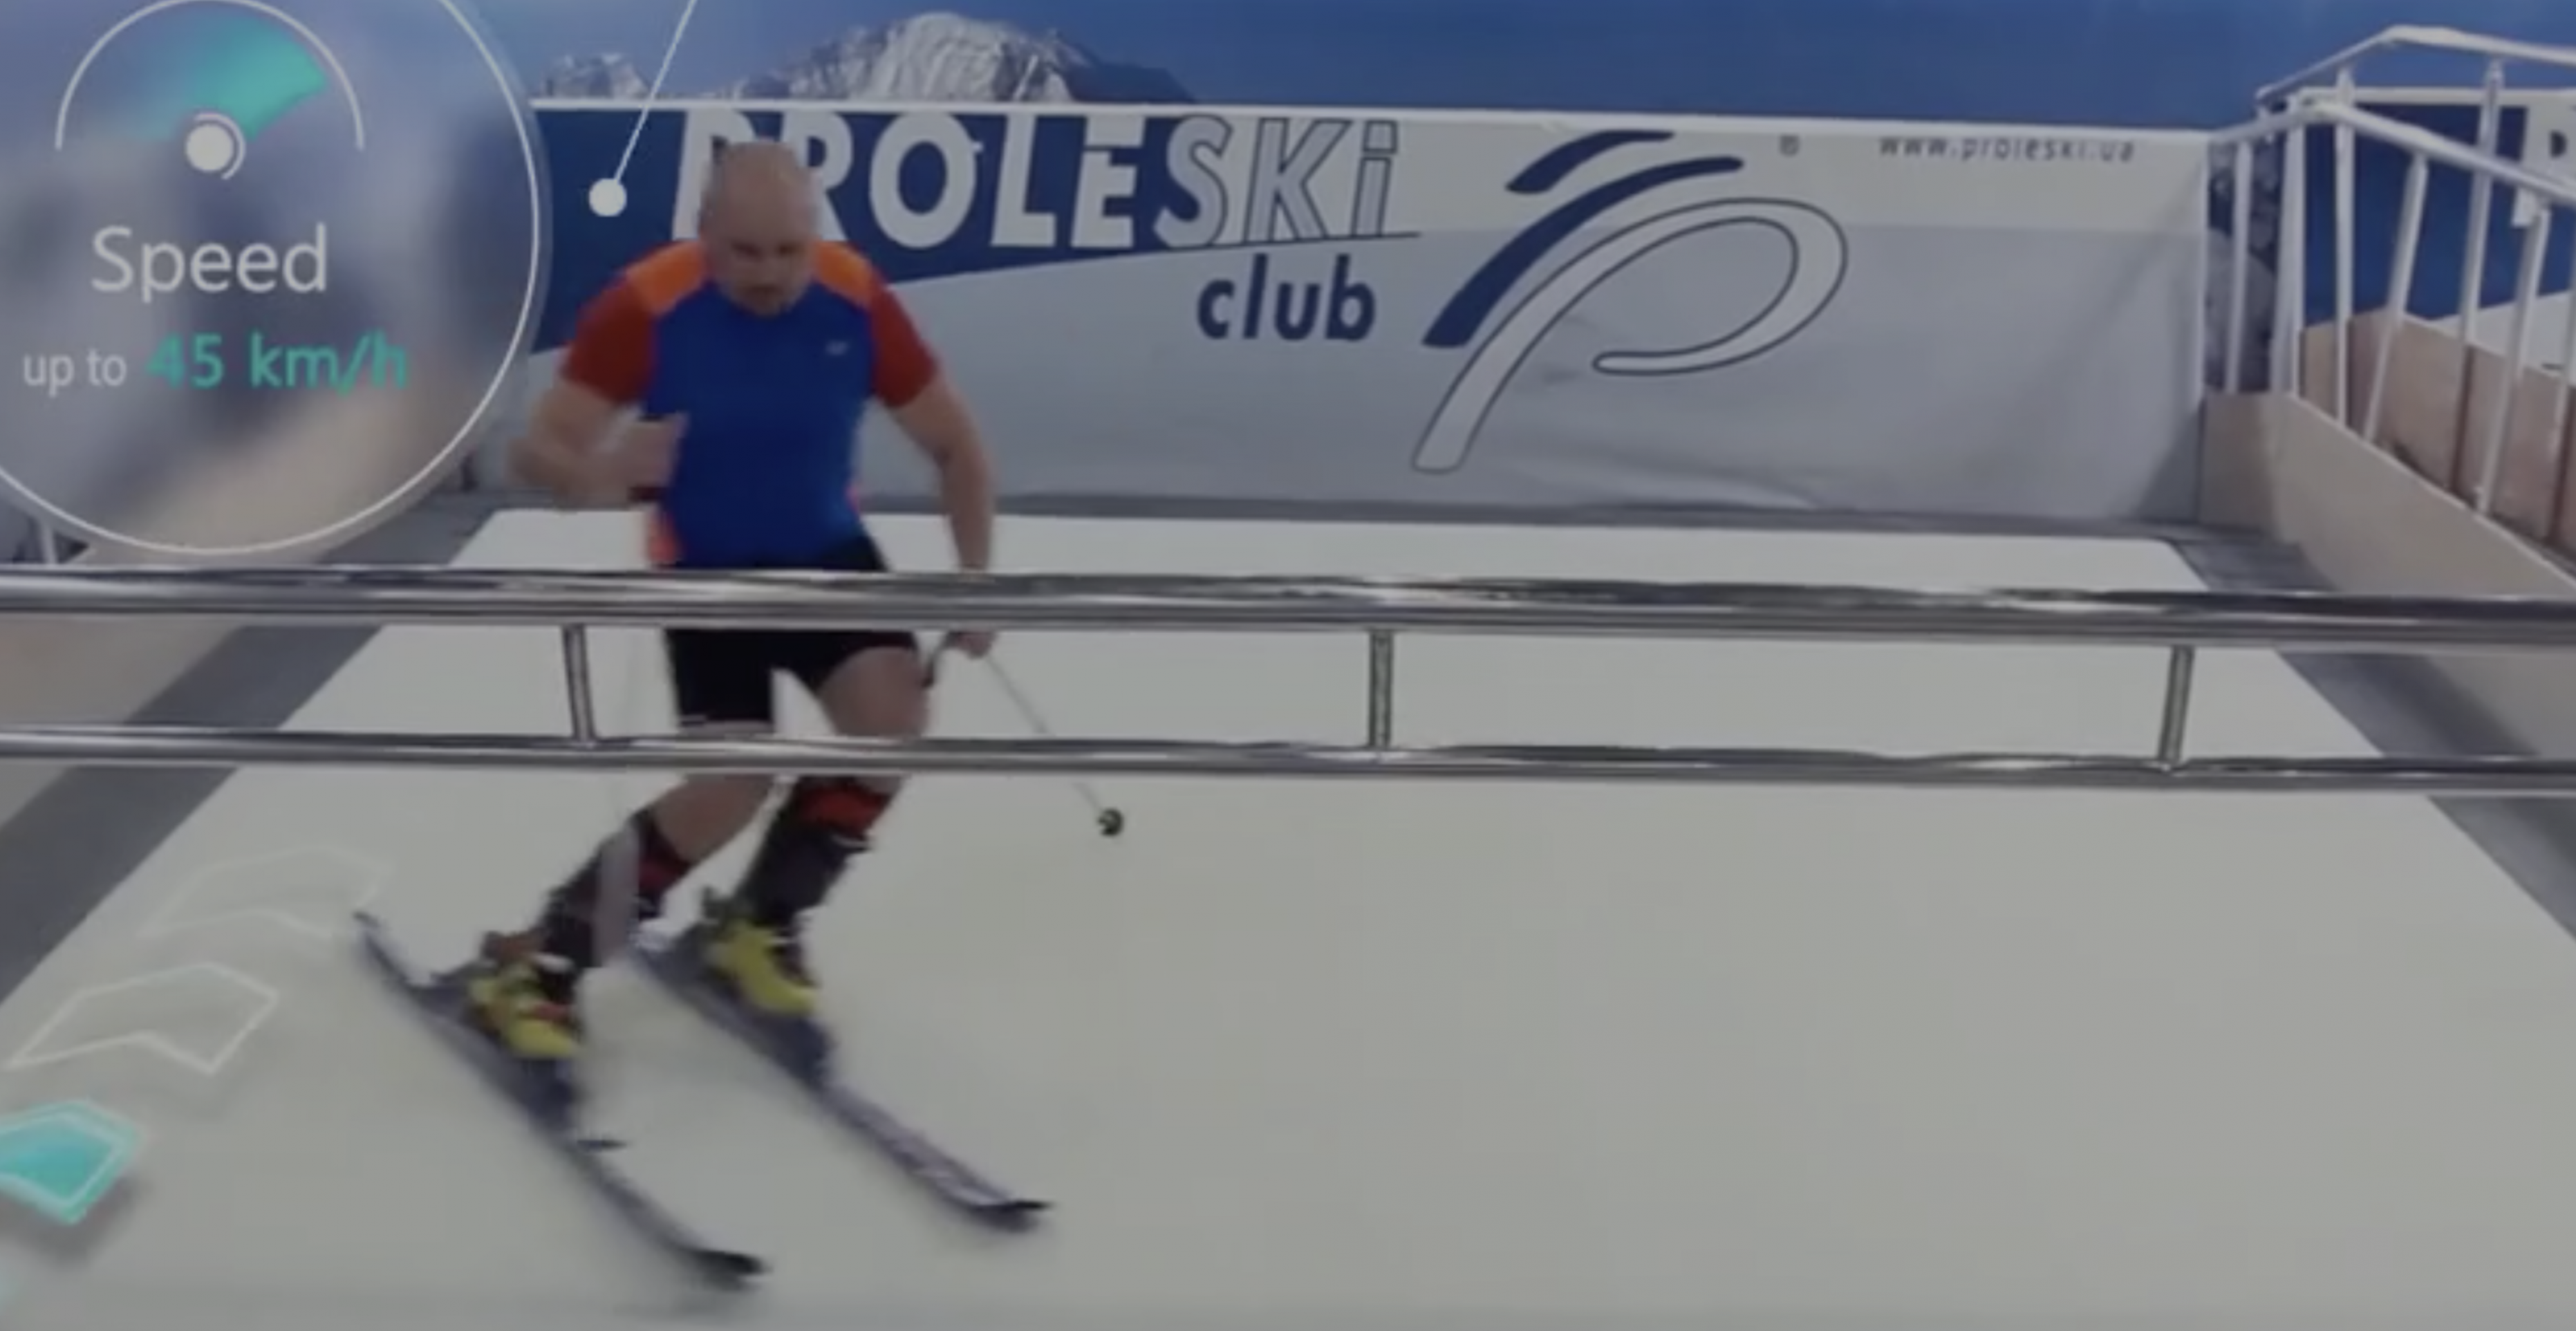 Proleski Simulador esqui y snowboard